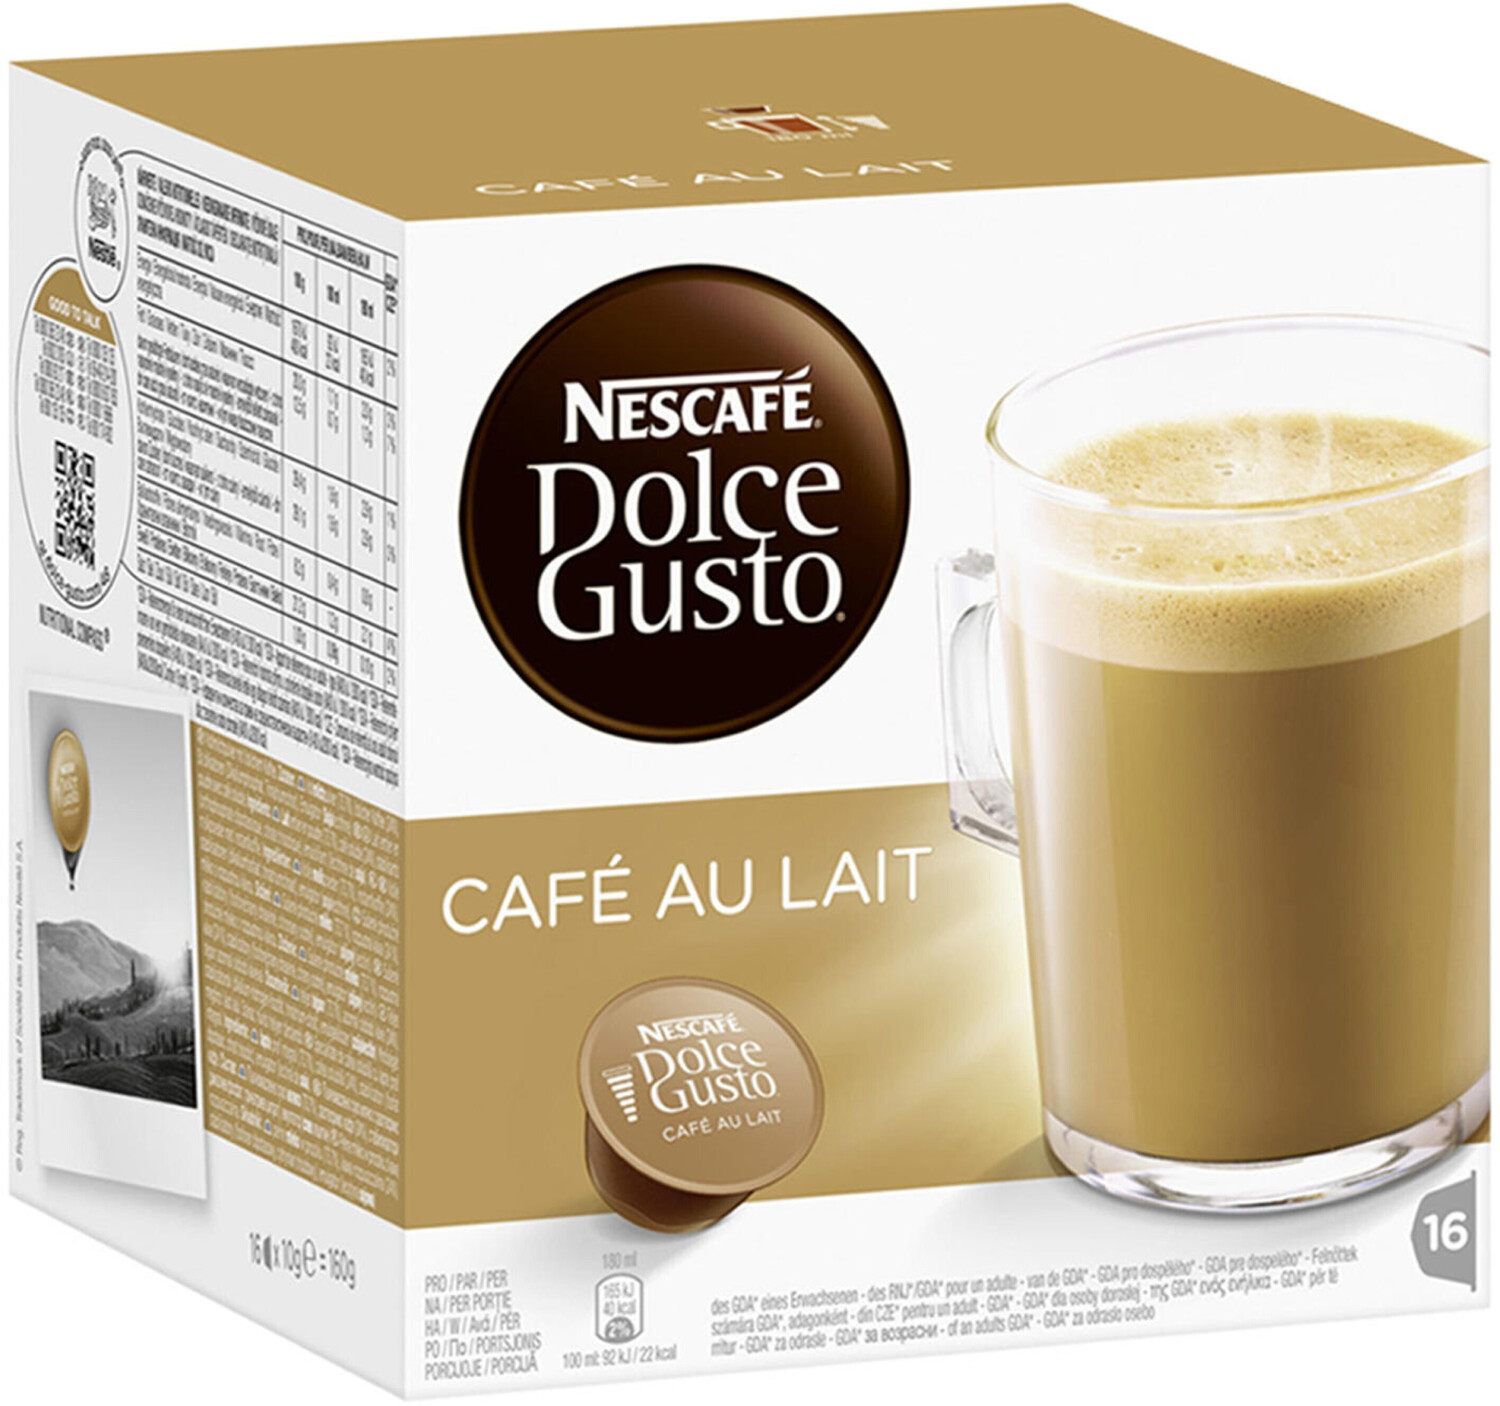 Nescafé Dolce Gusto Cafe au lait 16 Capsules desde 3,99 €